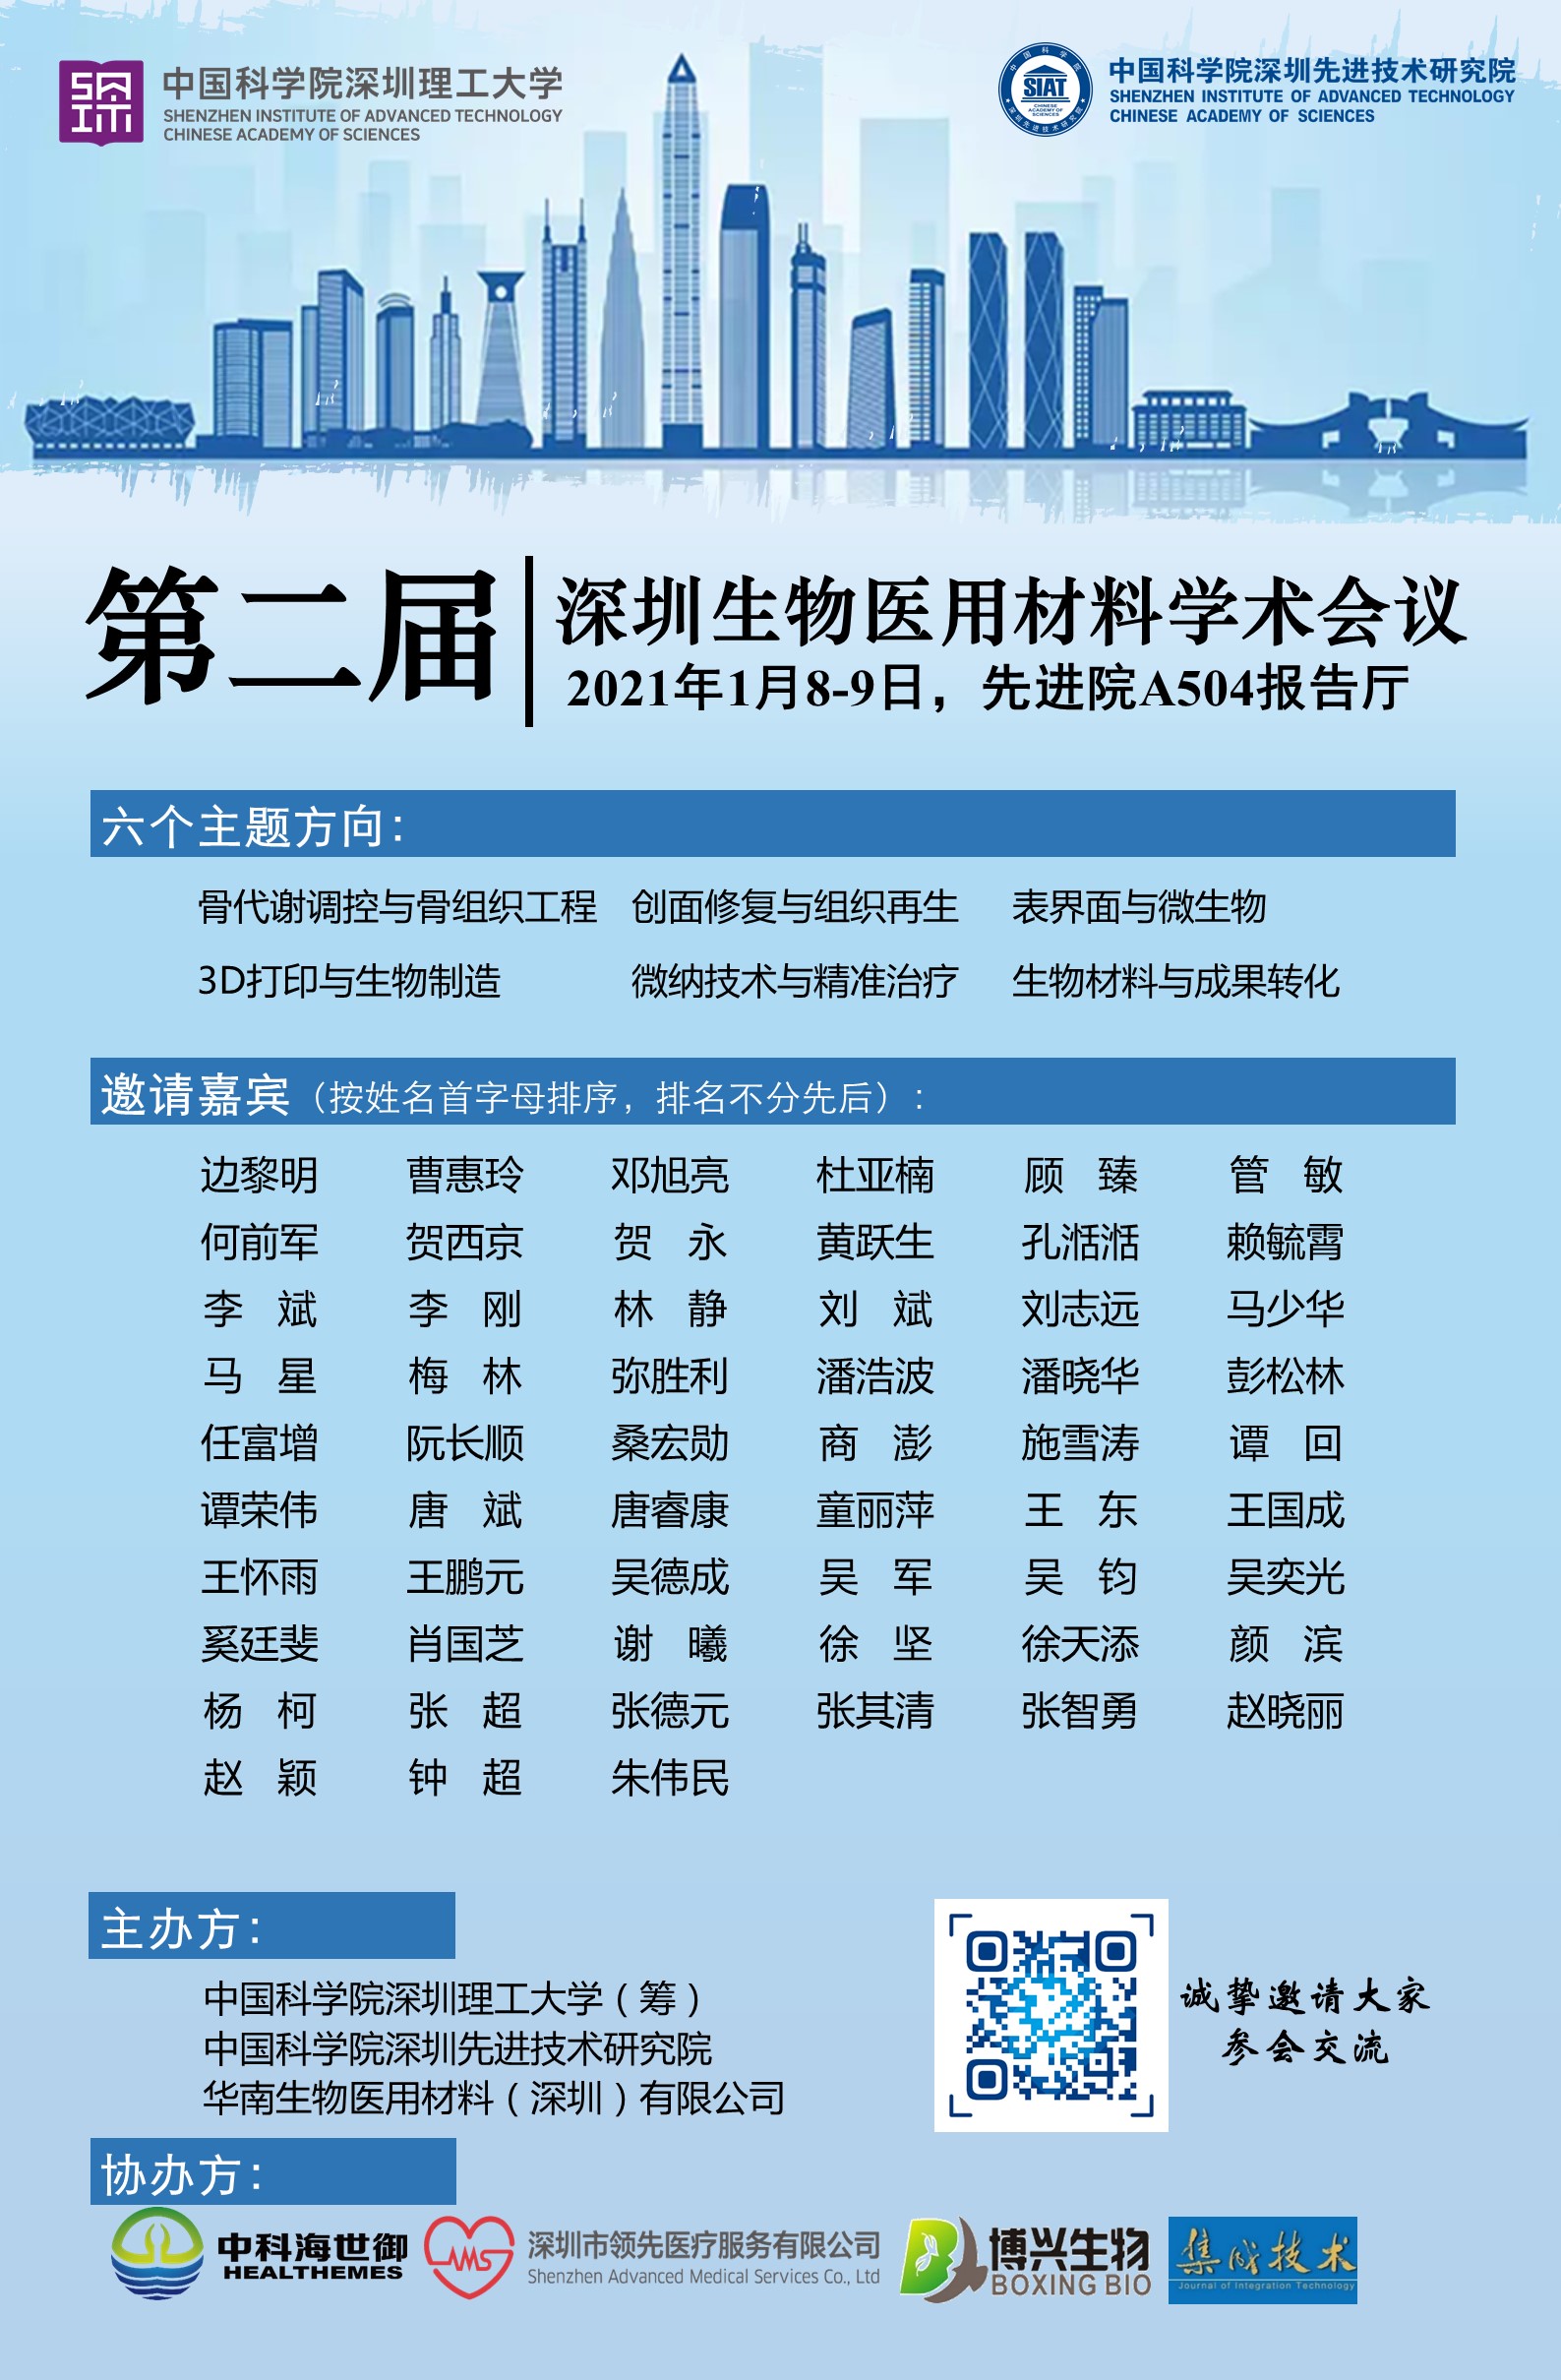 第二届深圳生物医用材料学术会议将于2021年1月8-9日于先进院A504报告厅召开